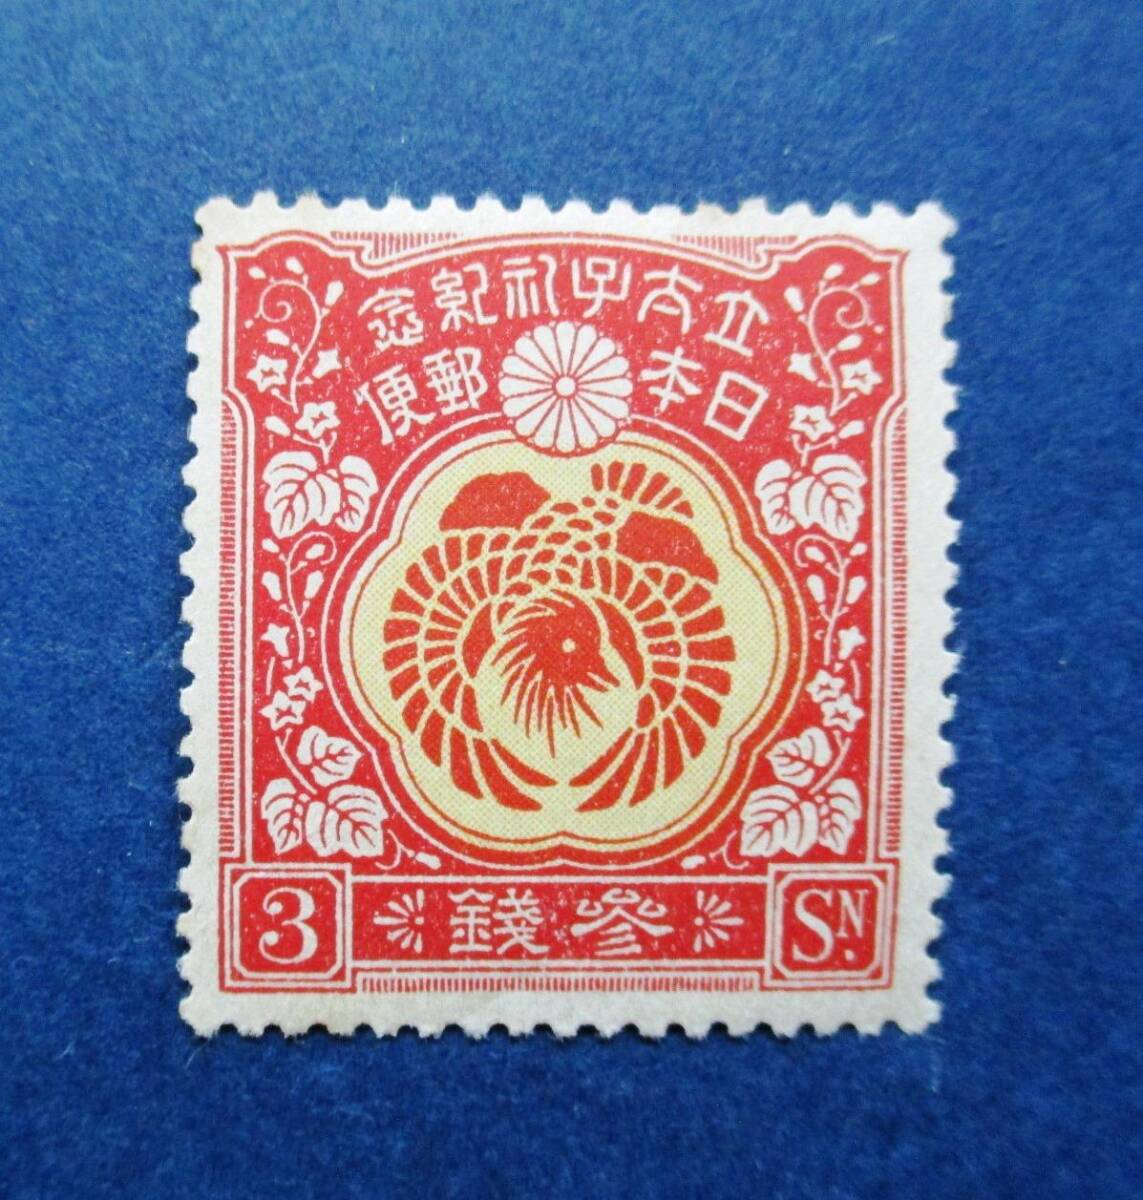 日本切手 裕仁立太子礼記念 3銭切手 SB41 ほぼ美品です。画像参照して下さい。の画像5